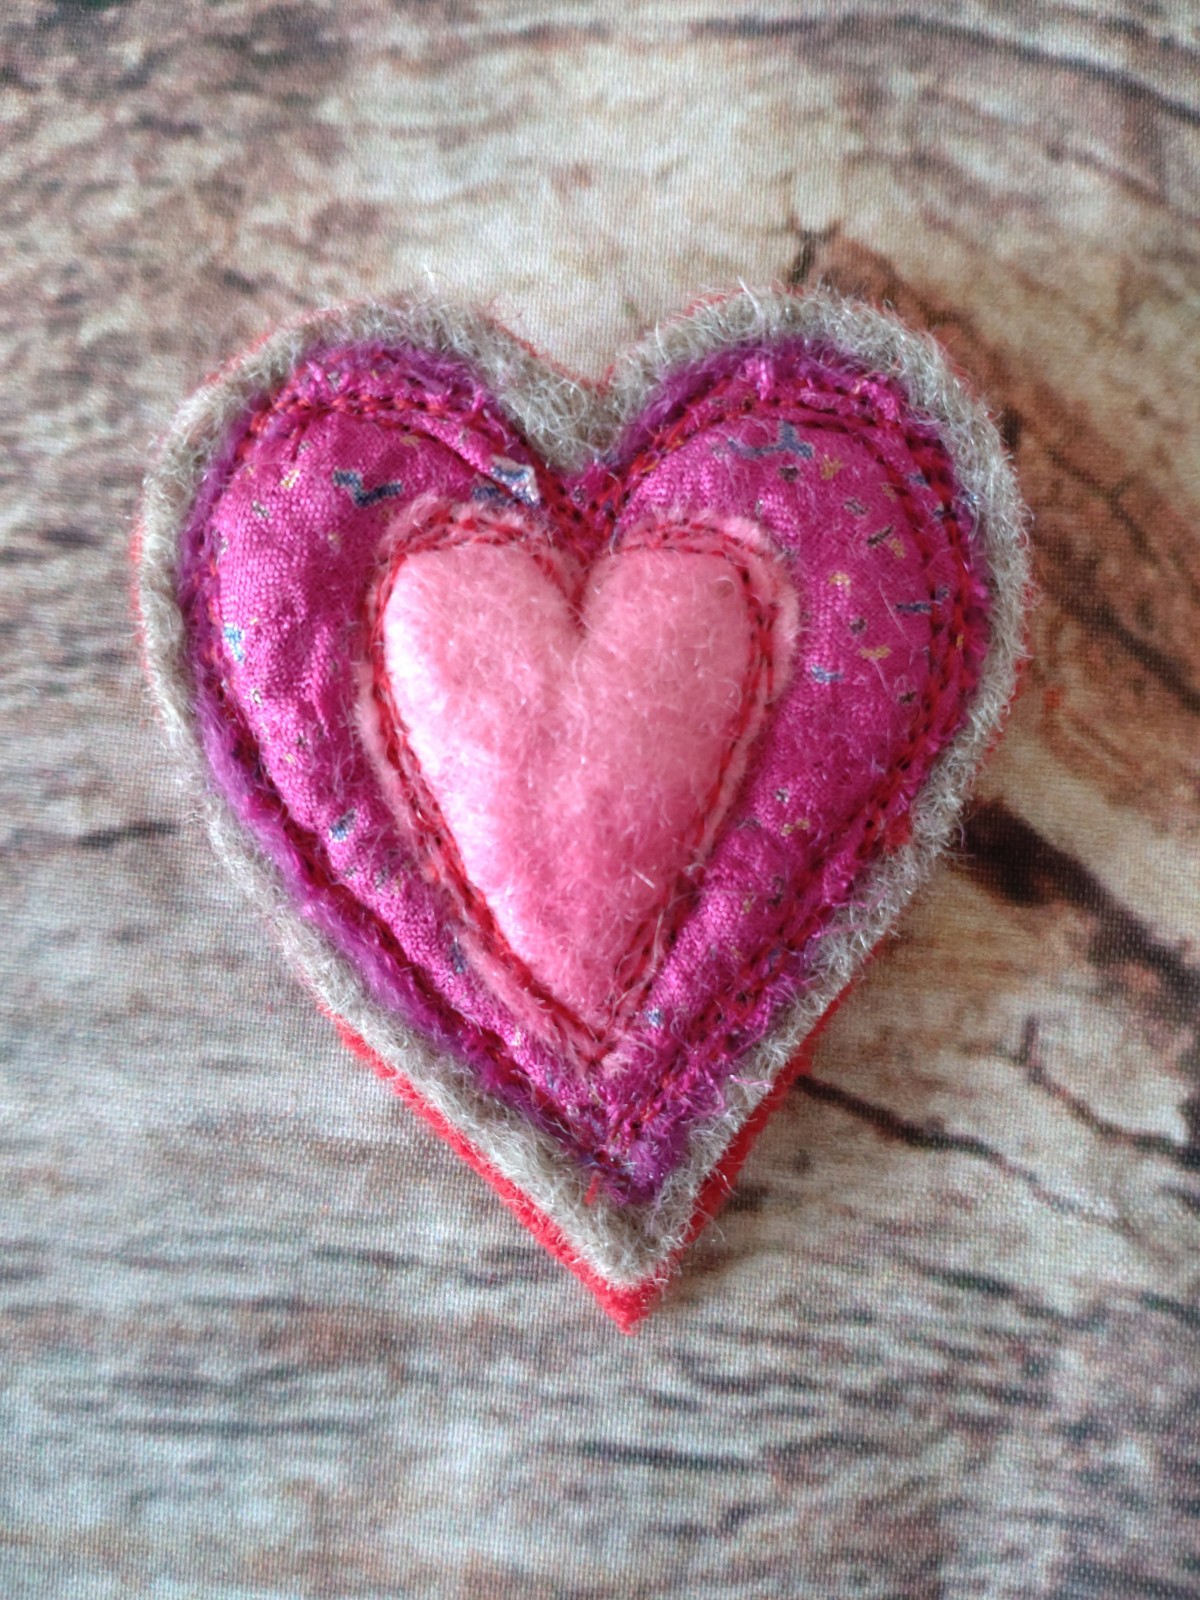 Pink heart brooch